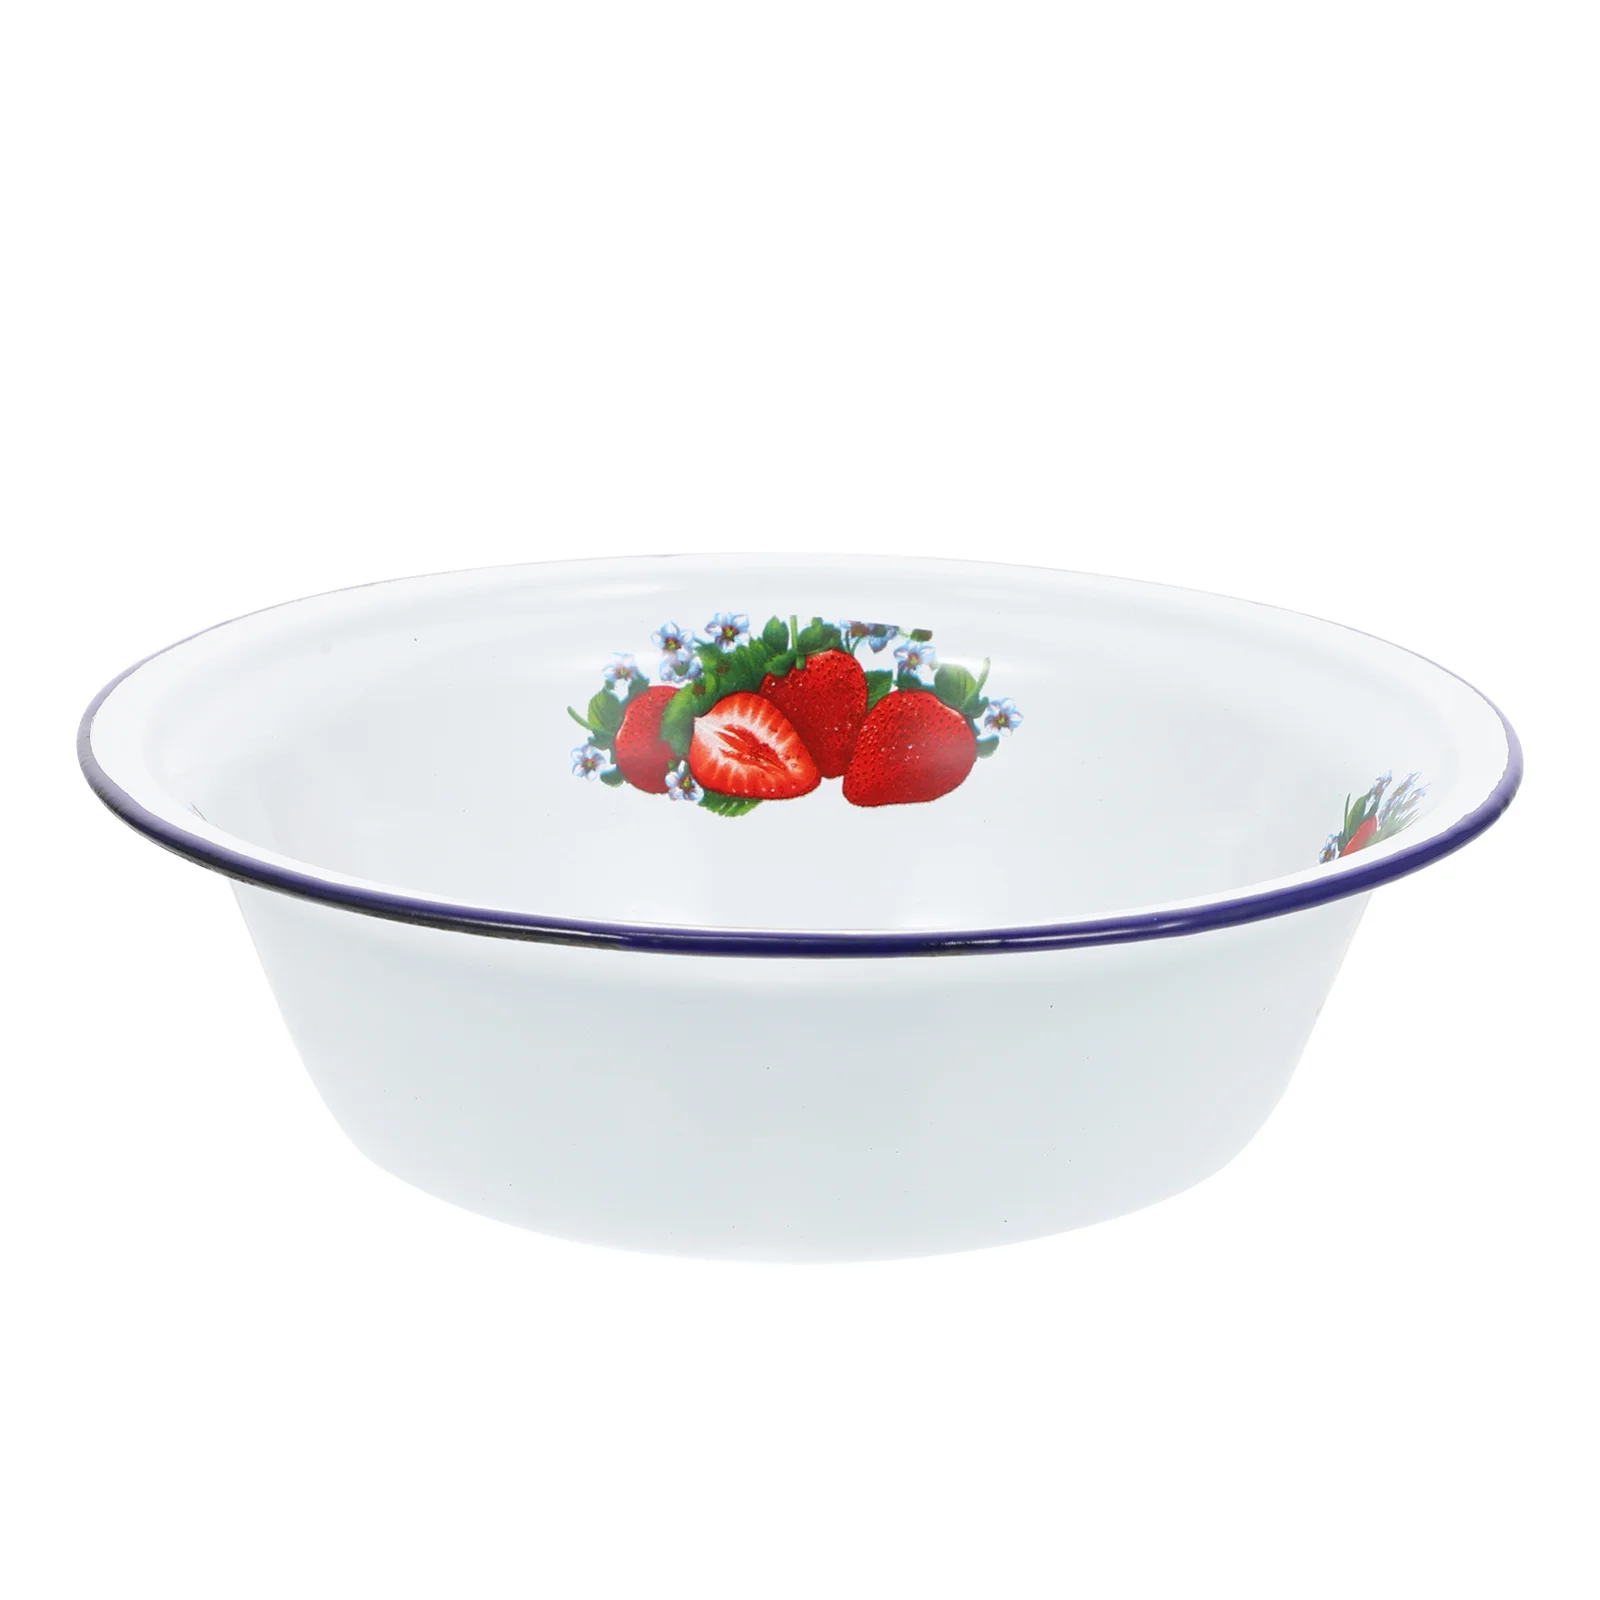 

Bowl Enamel Bowls Enamelware Basin Soup Serving Vintage Mixing Salad Kitchen Fruit Food Dishes Metal Wash Large Cereal Noodle